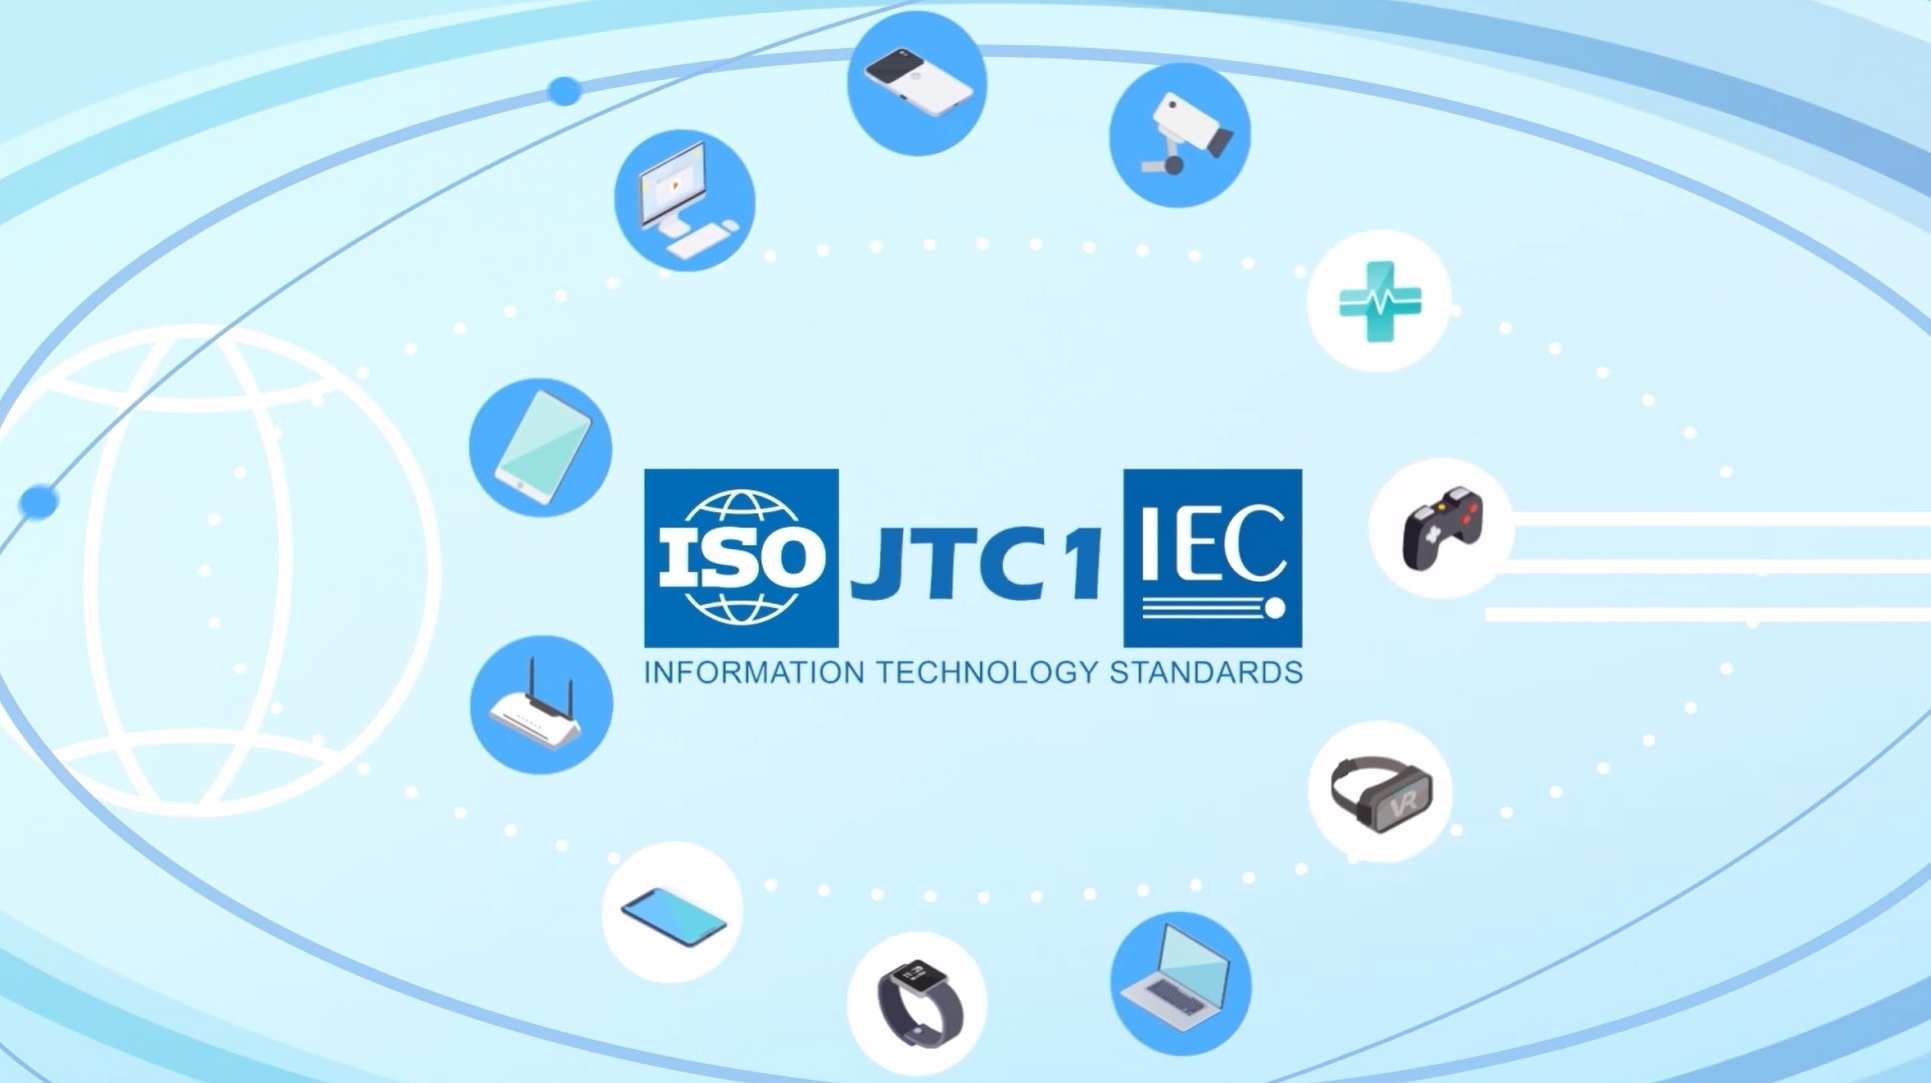 ISO/IEC JTC 1 소개 사진